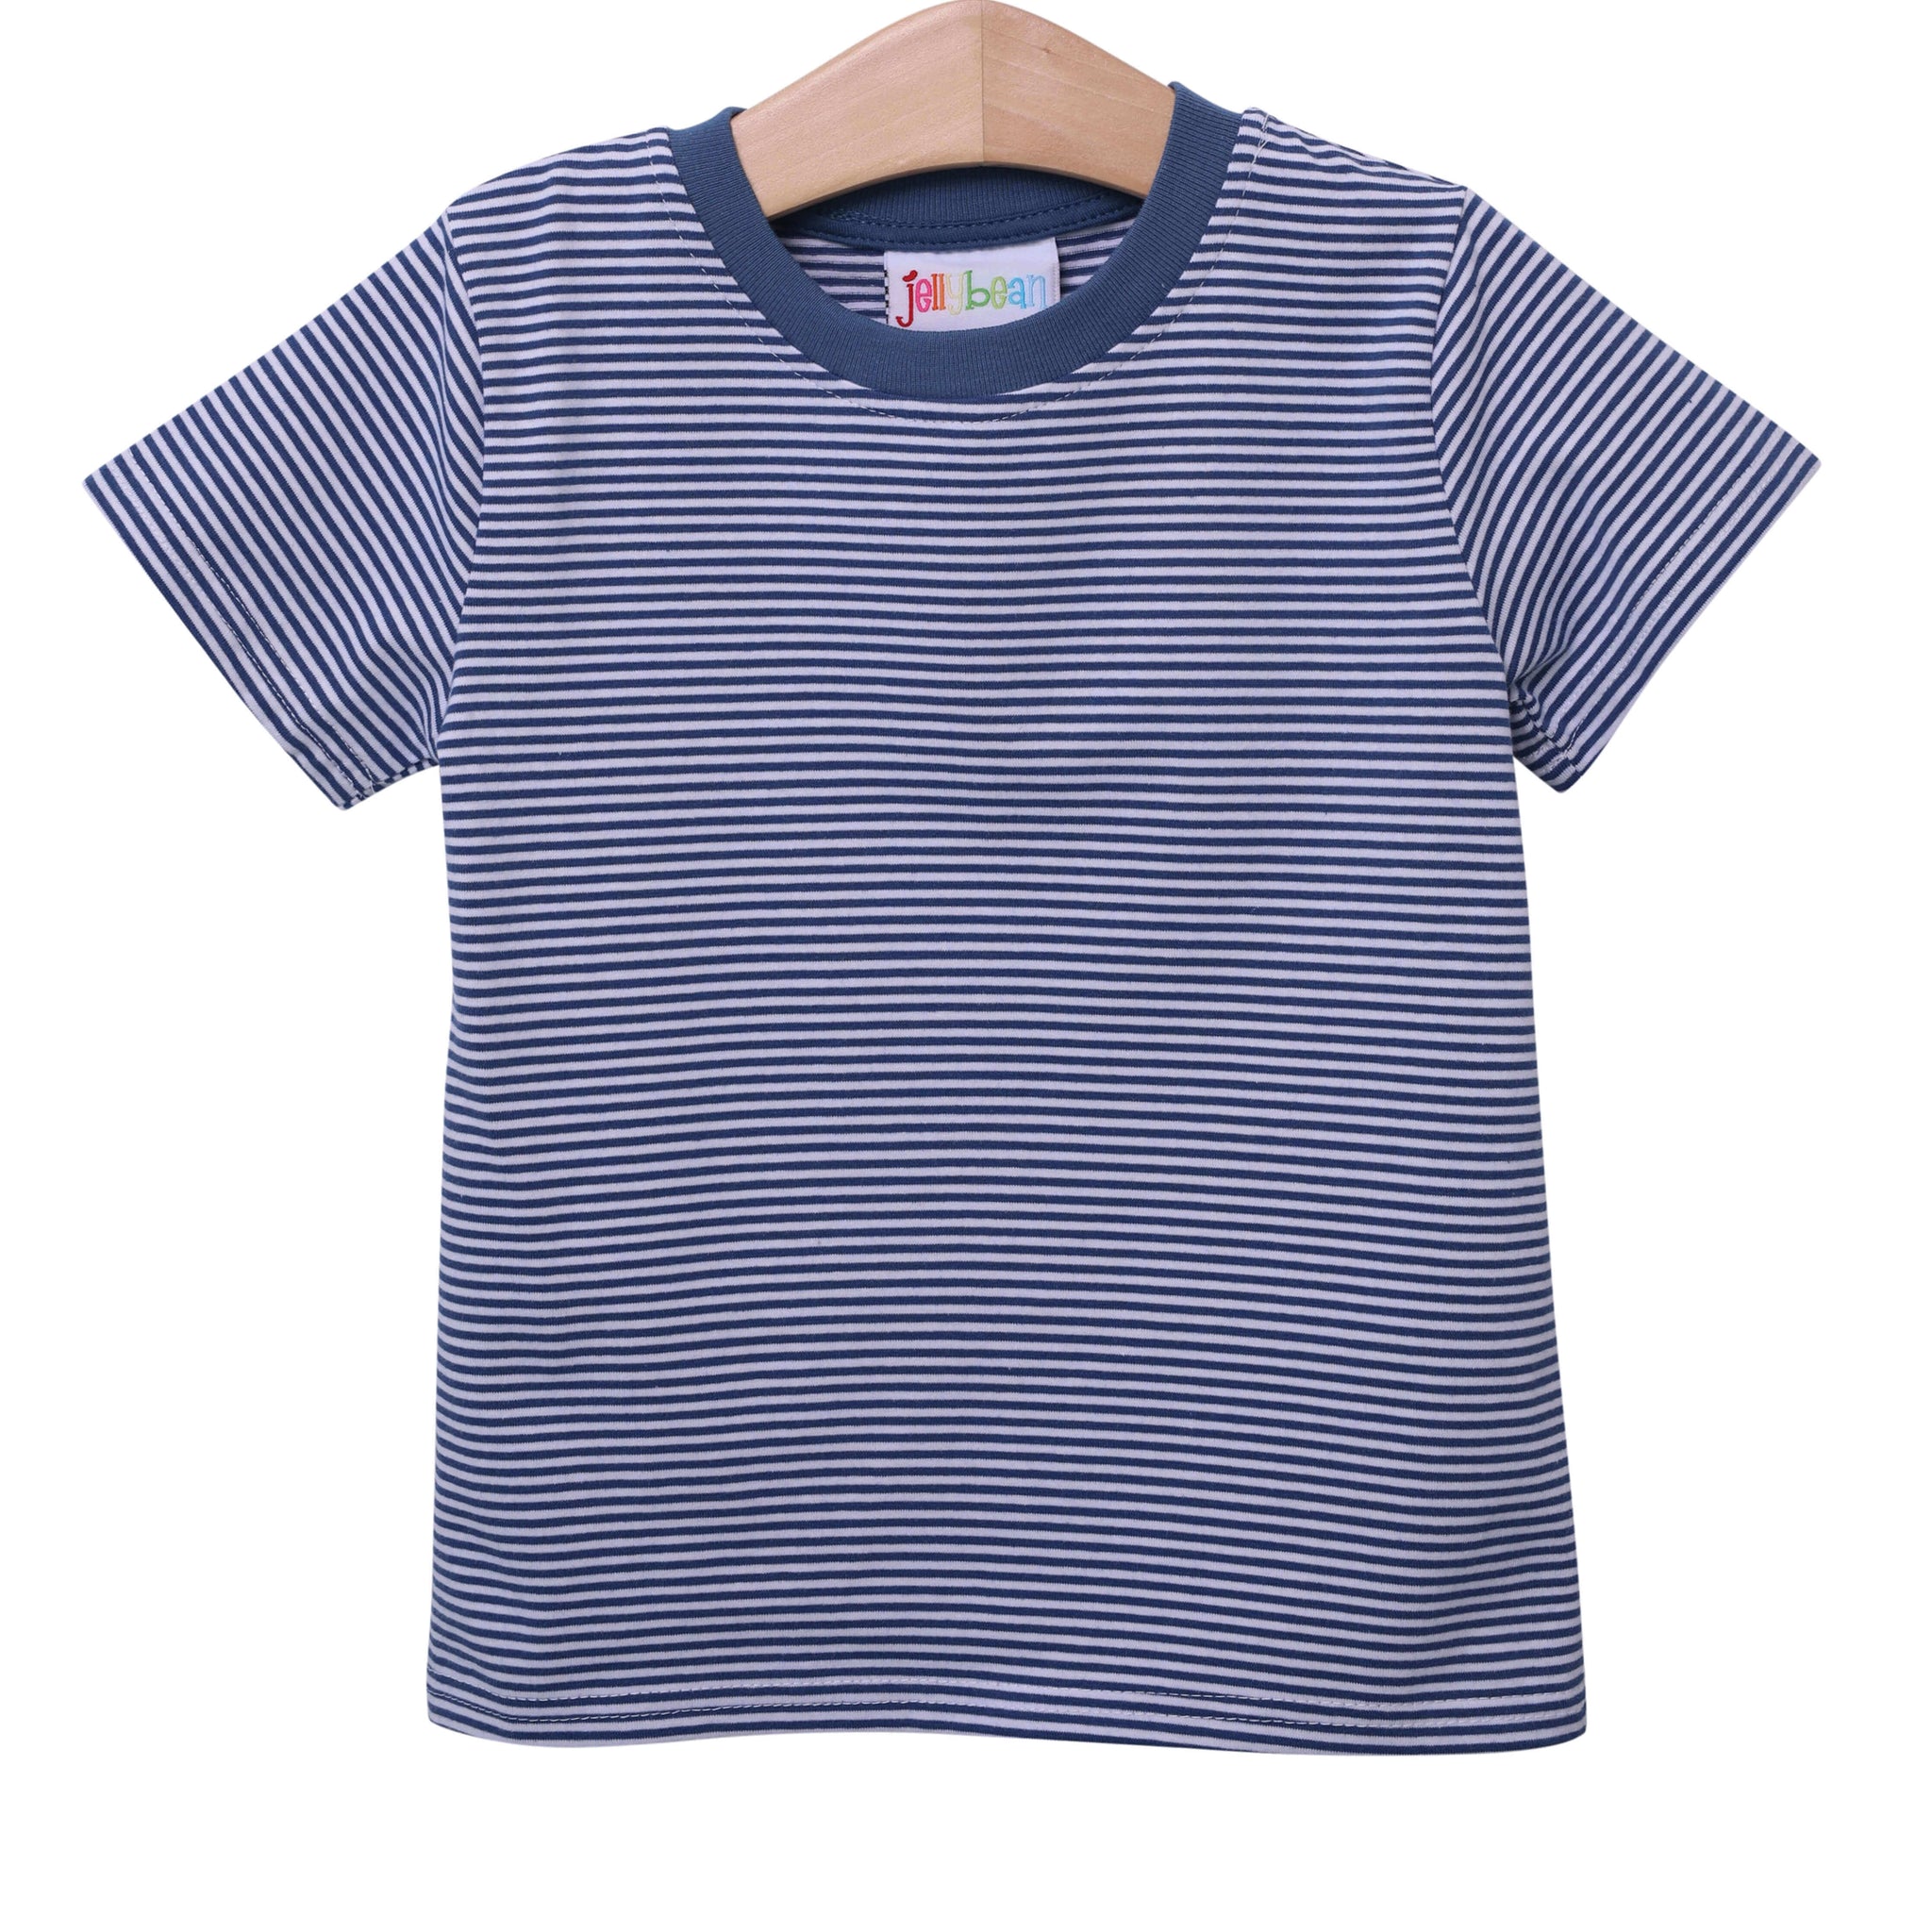 Graham Shirt- Yale Blue Stripe